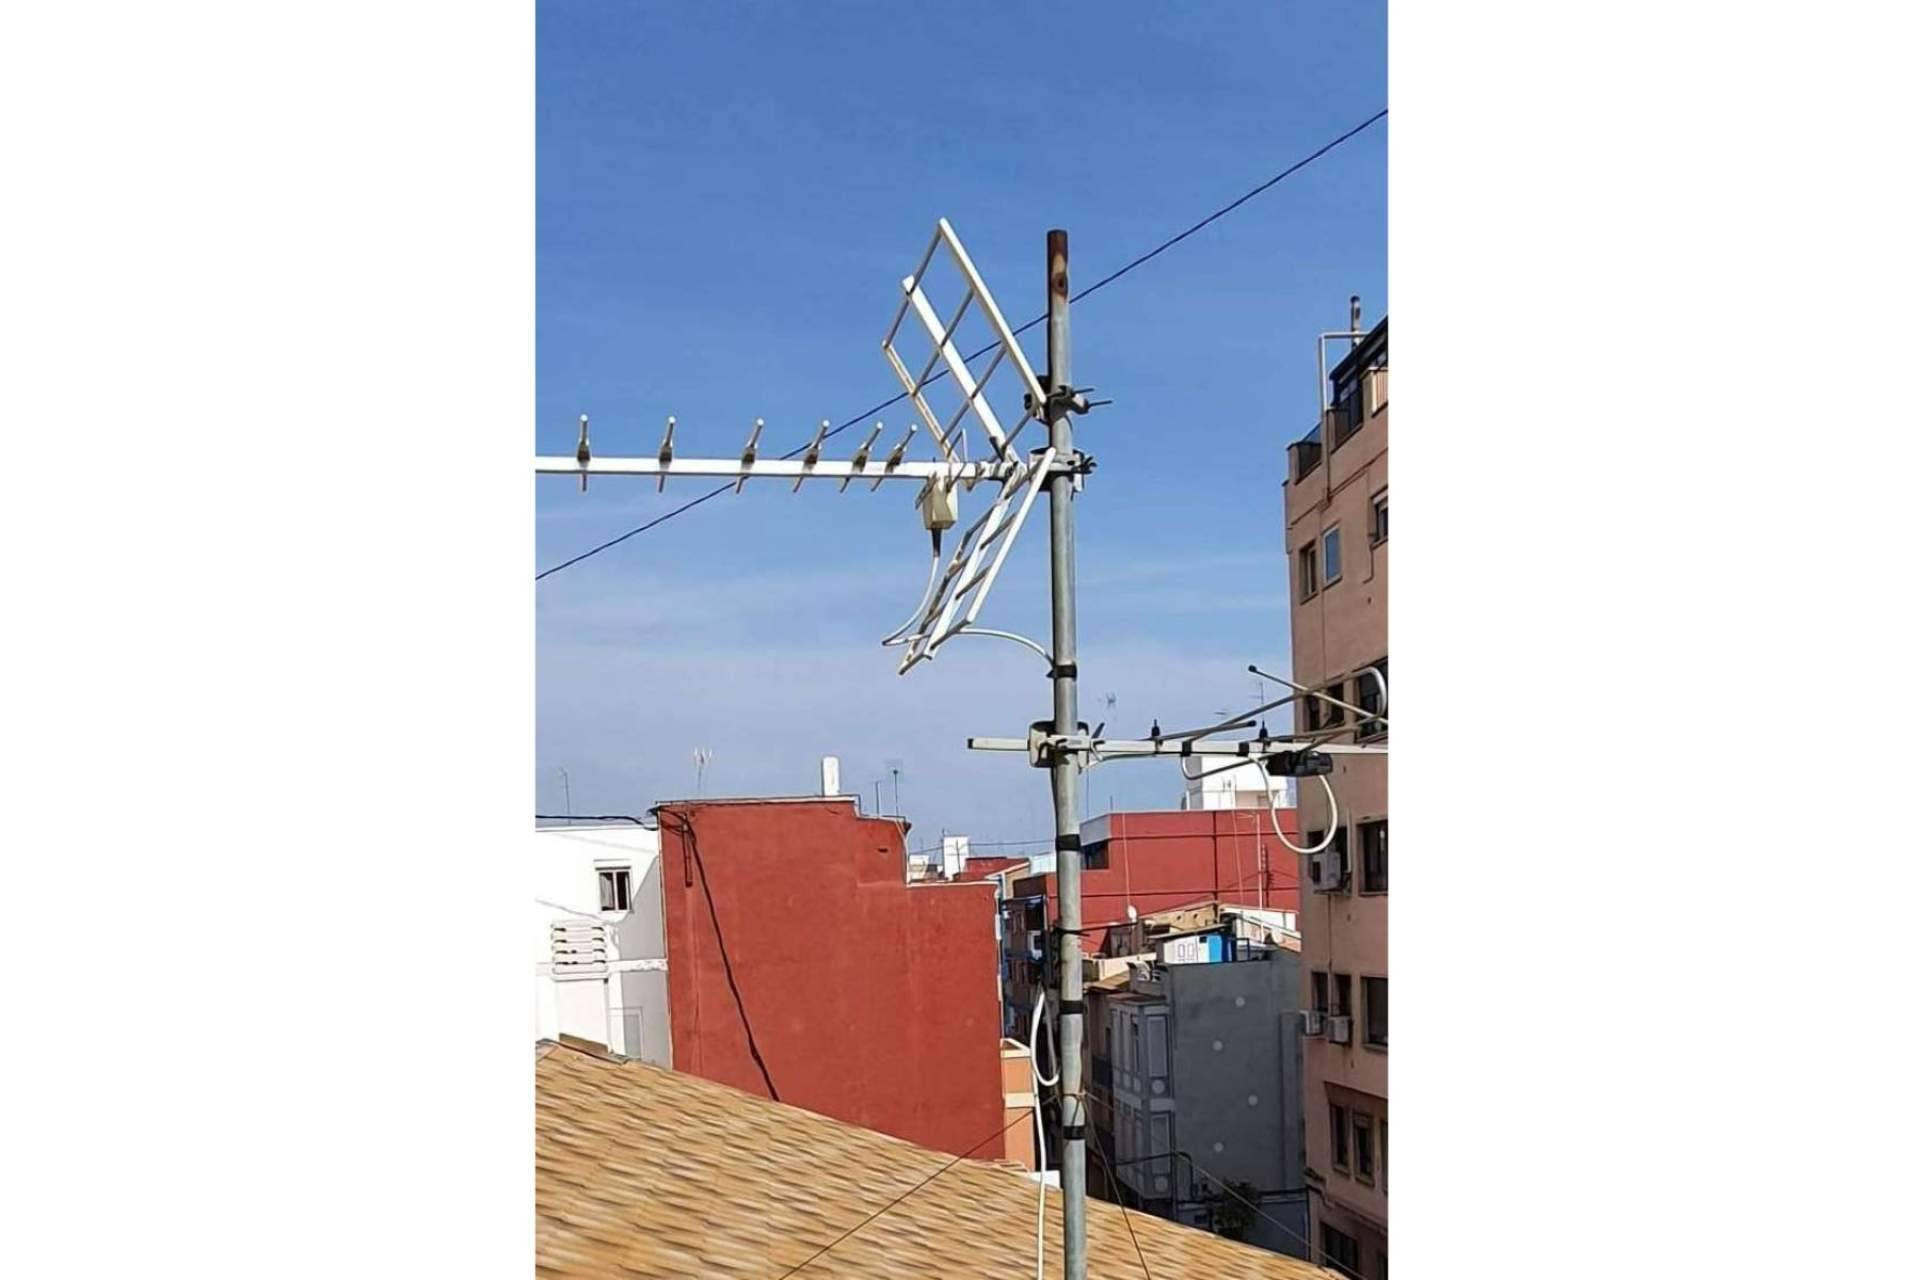  La solución para los problemas con las antenas y redes en Valencia; Savelec 